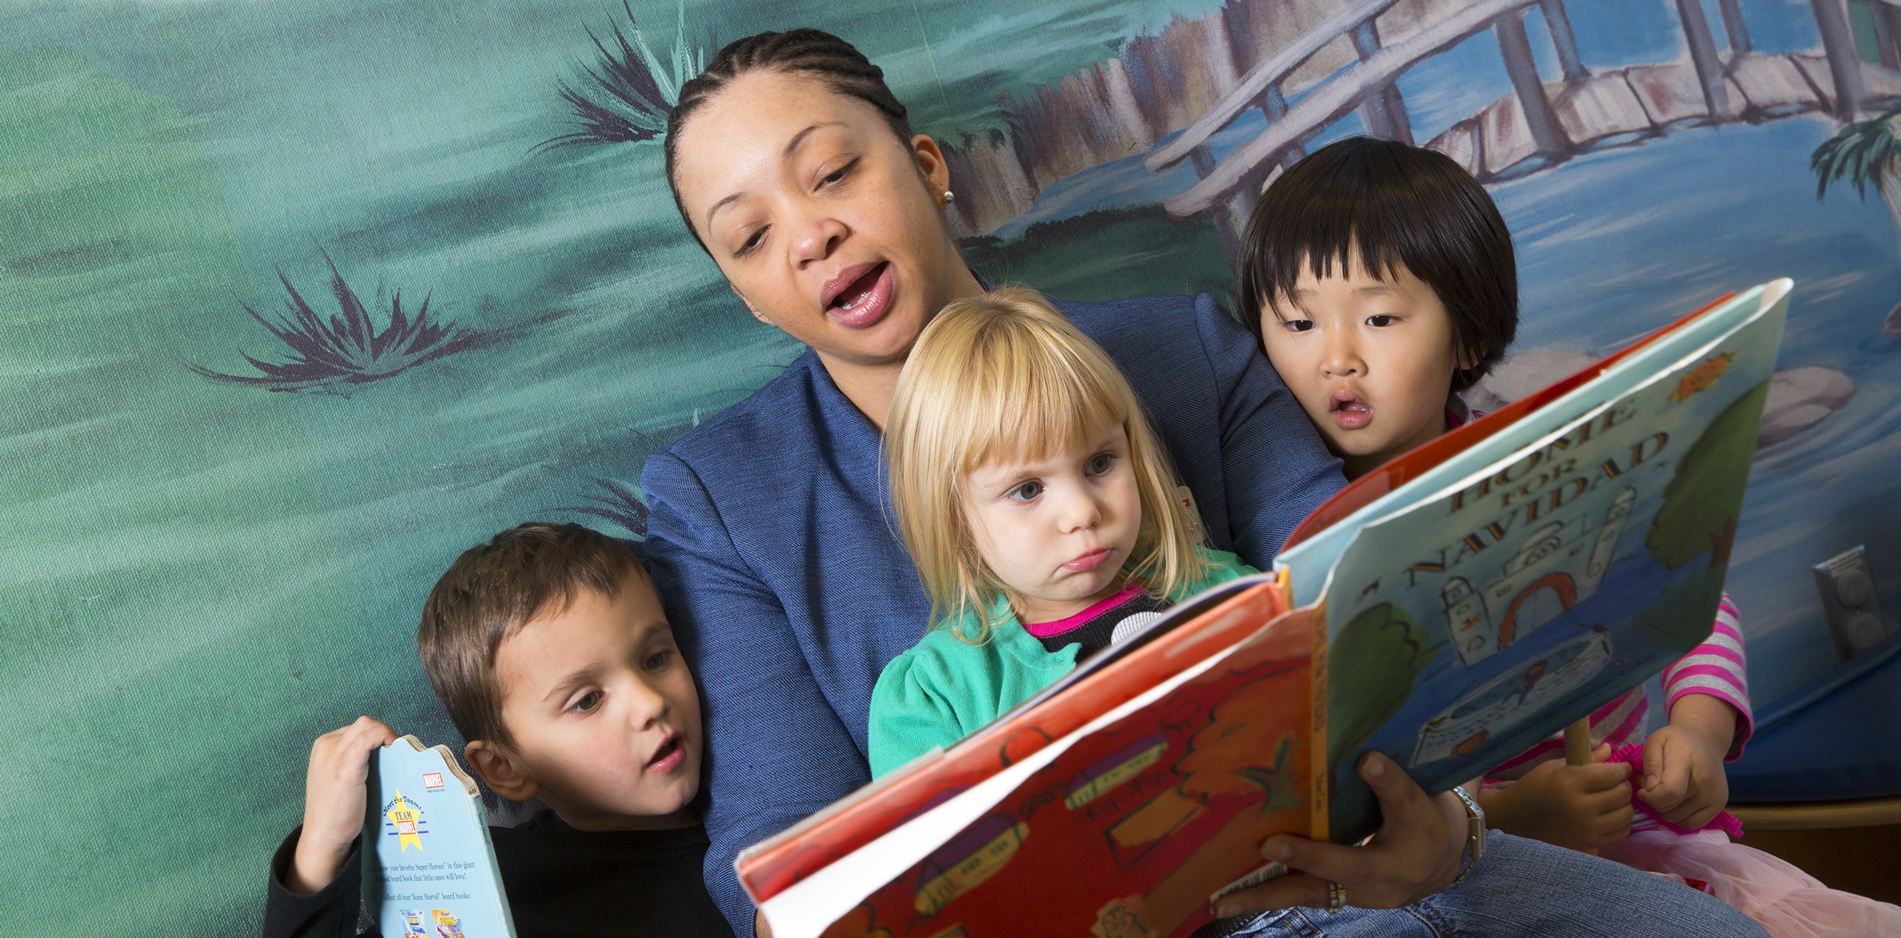 Durden reads to kids